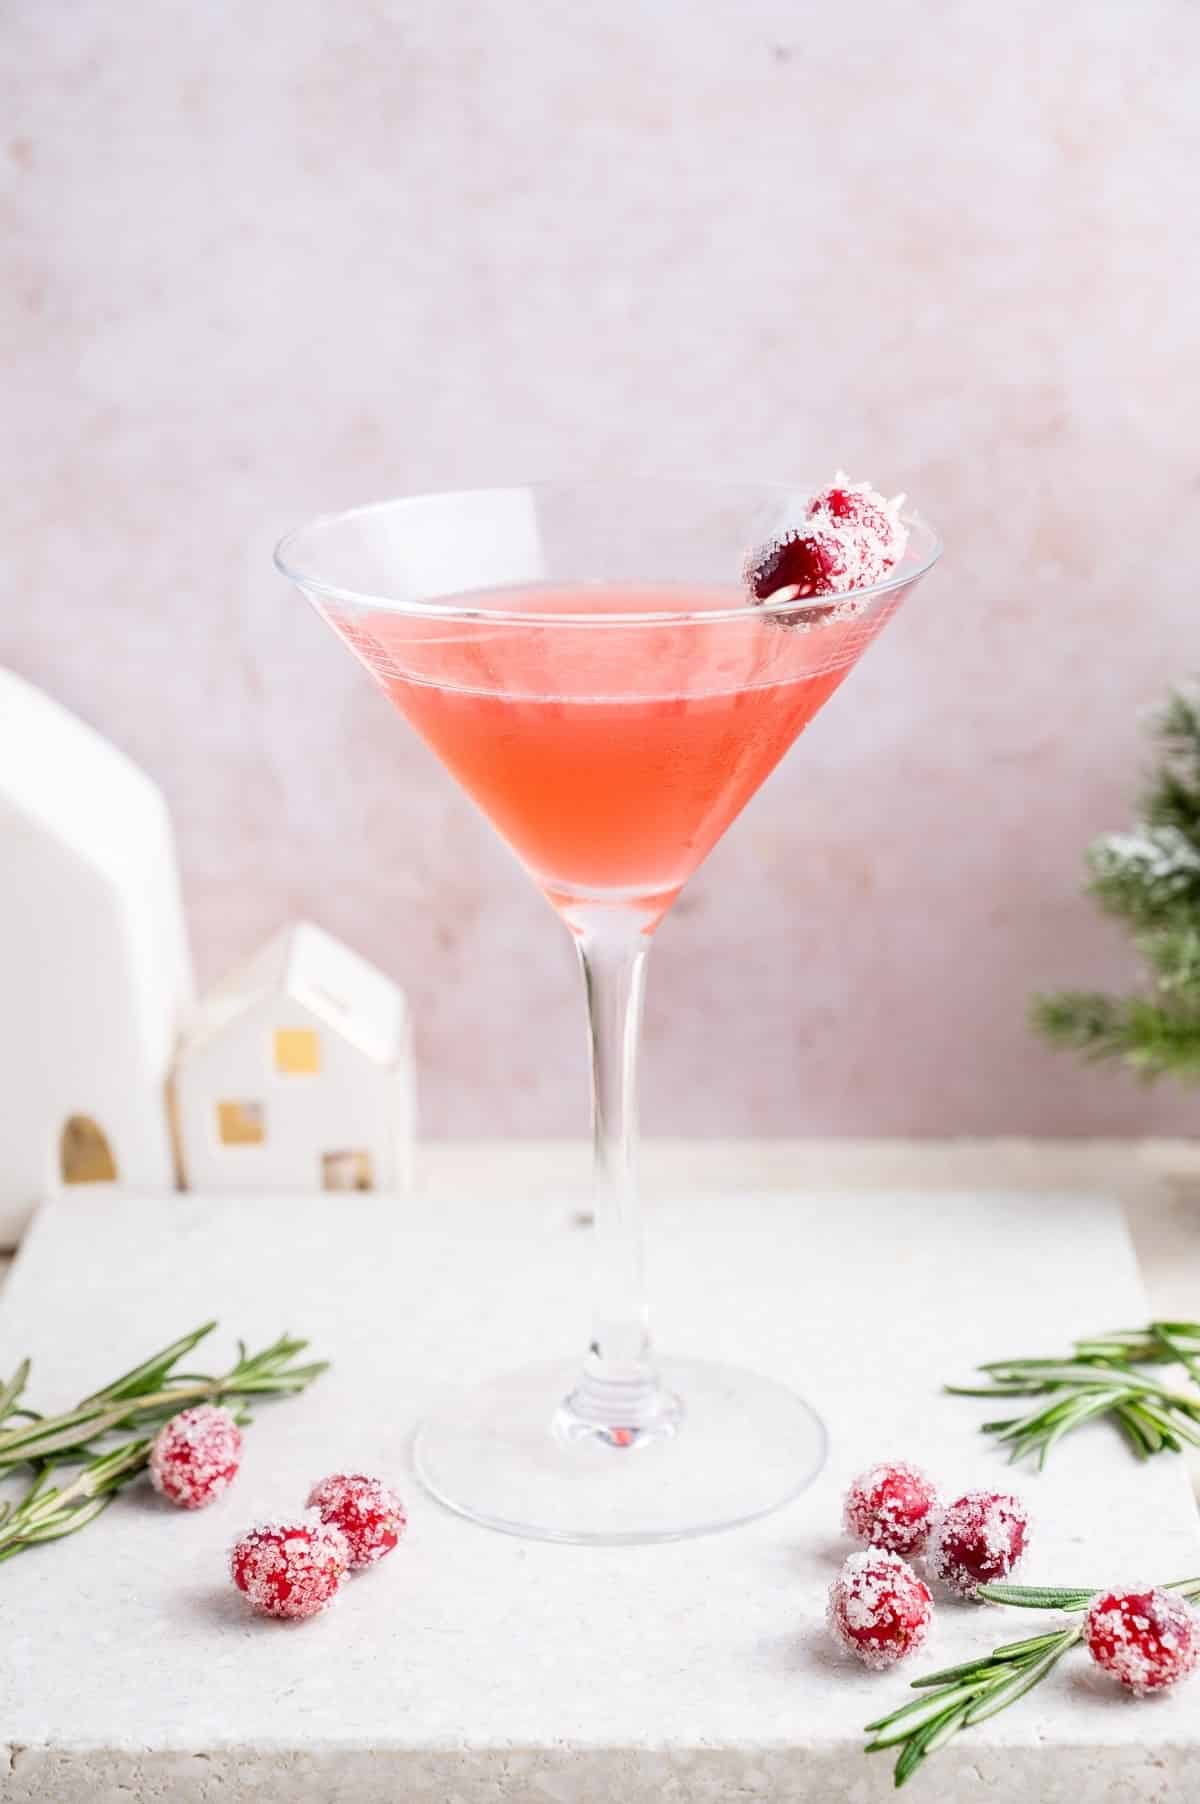 68 - cranberry-martini-everyday-delicious-2-martini-recipes